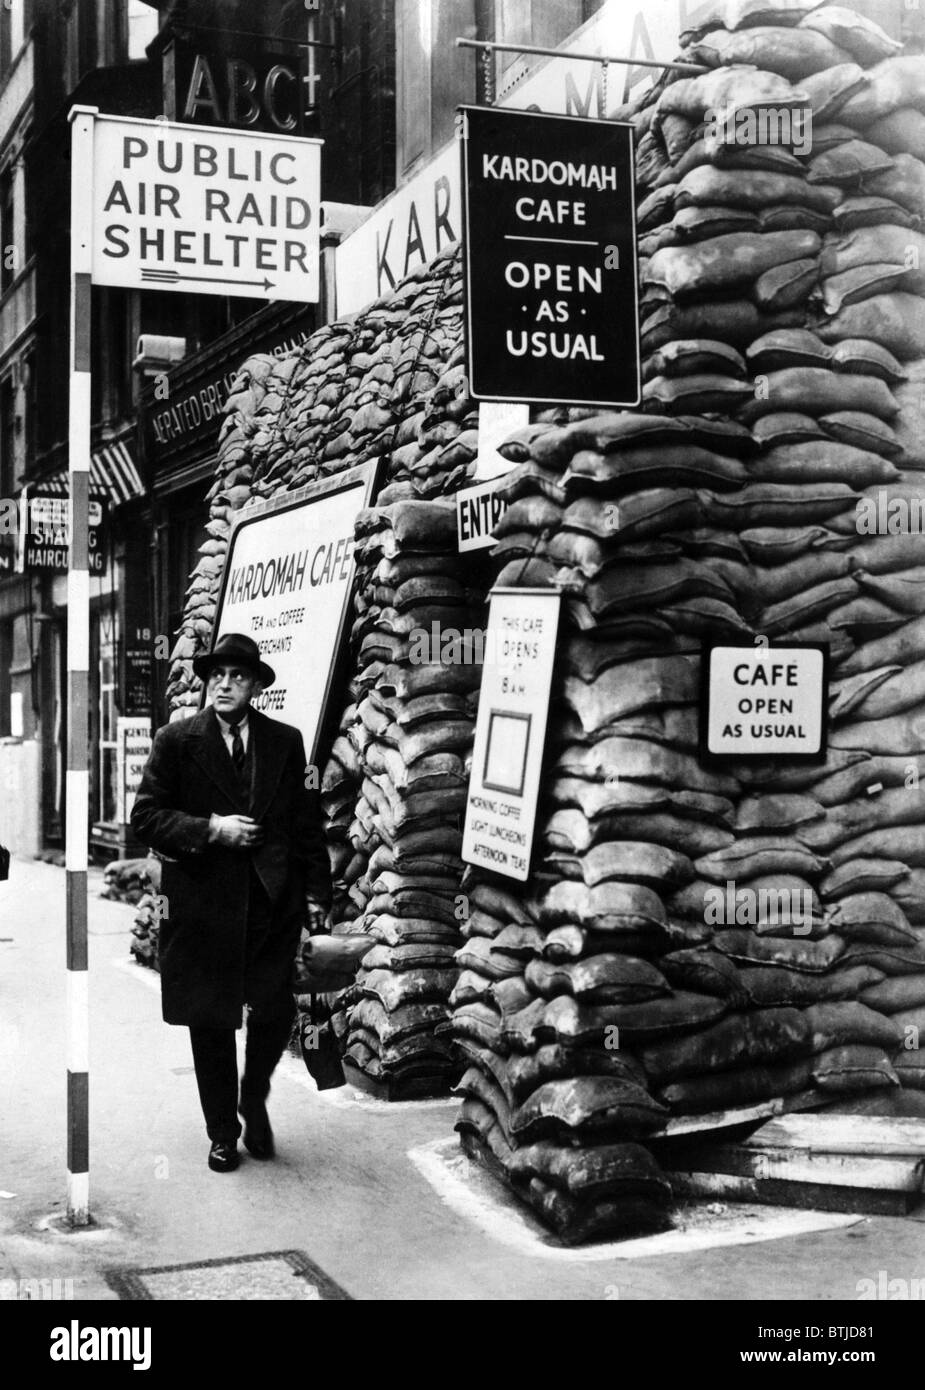 Il Kardomah Cafe, equipaggiato come un raid aereo riparo come attrazione durante il tempo di guerra, Fleet St, Londra, Inghilterra, 15 Novembre 193 Foto Stock